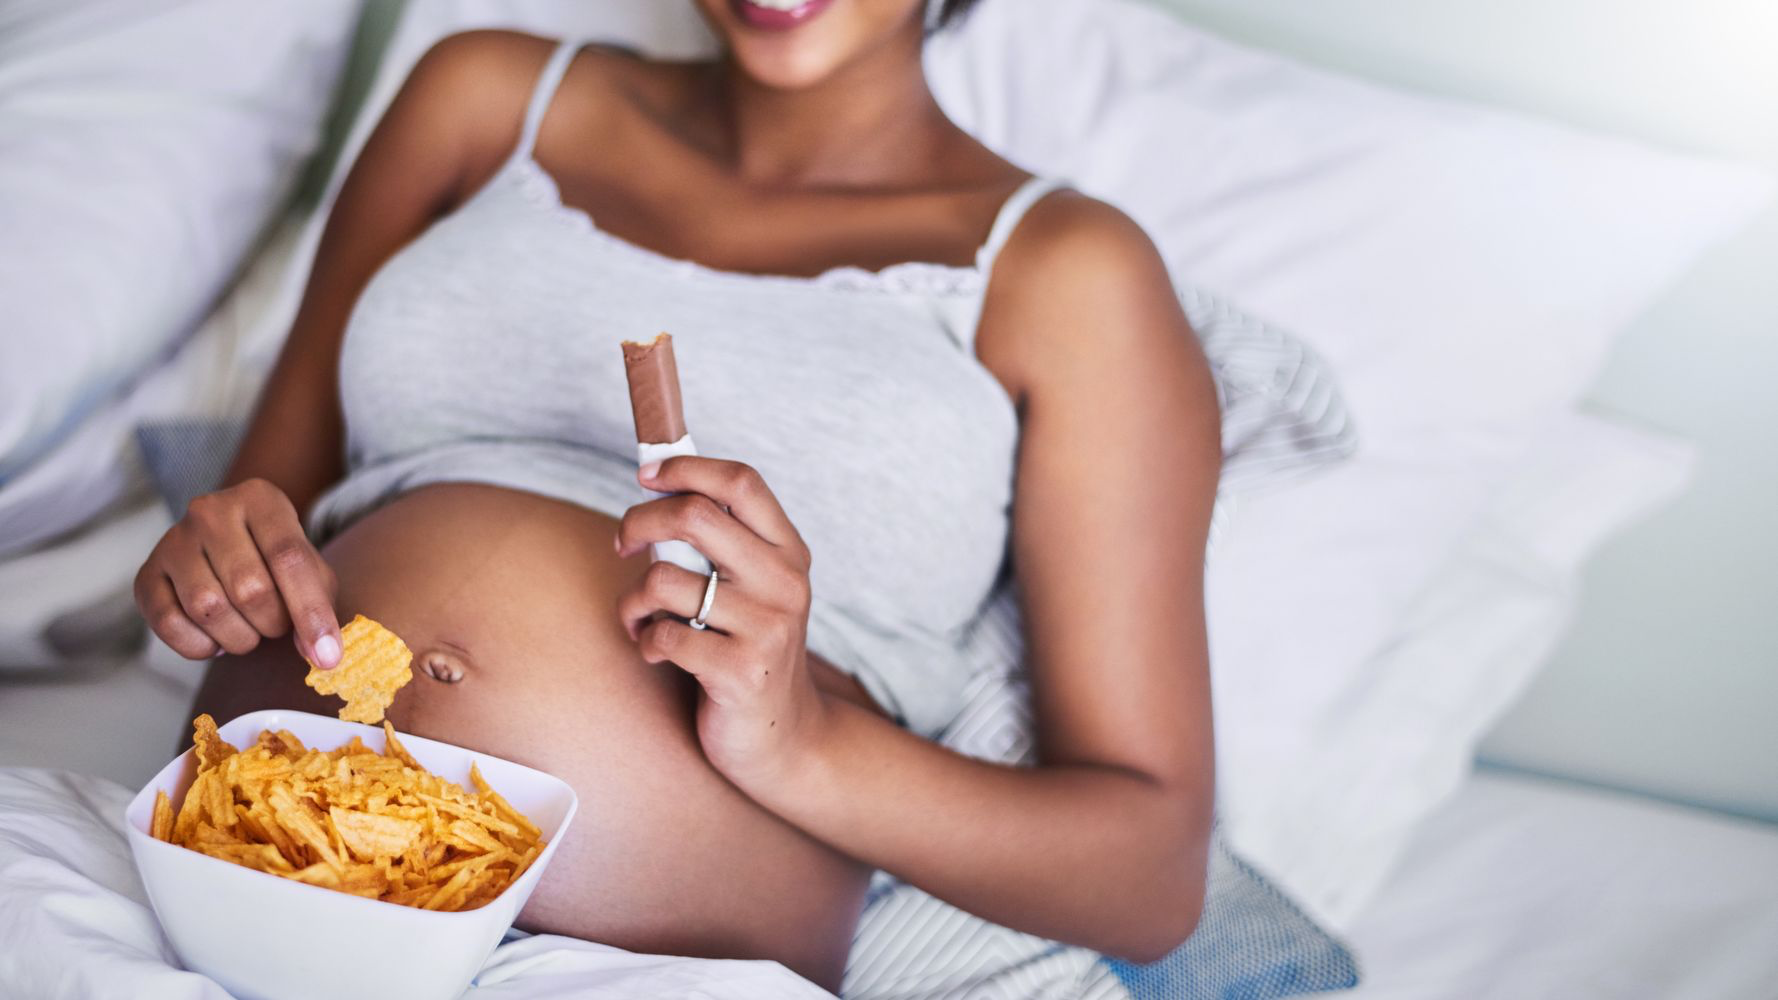 Thèm ăn khi mang thai: Bí quyết đơn giản giúp mẹ vượt qua hiệu quả